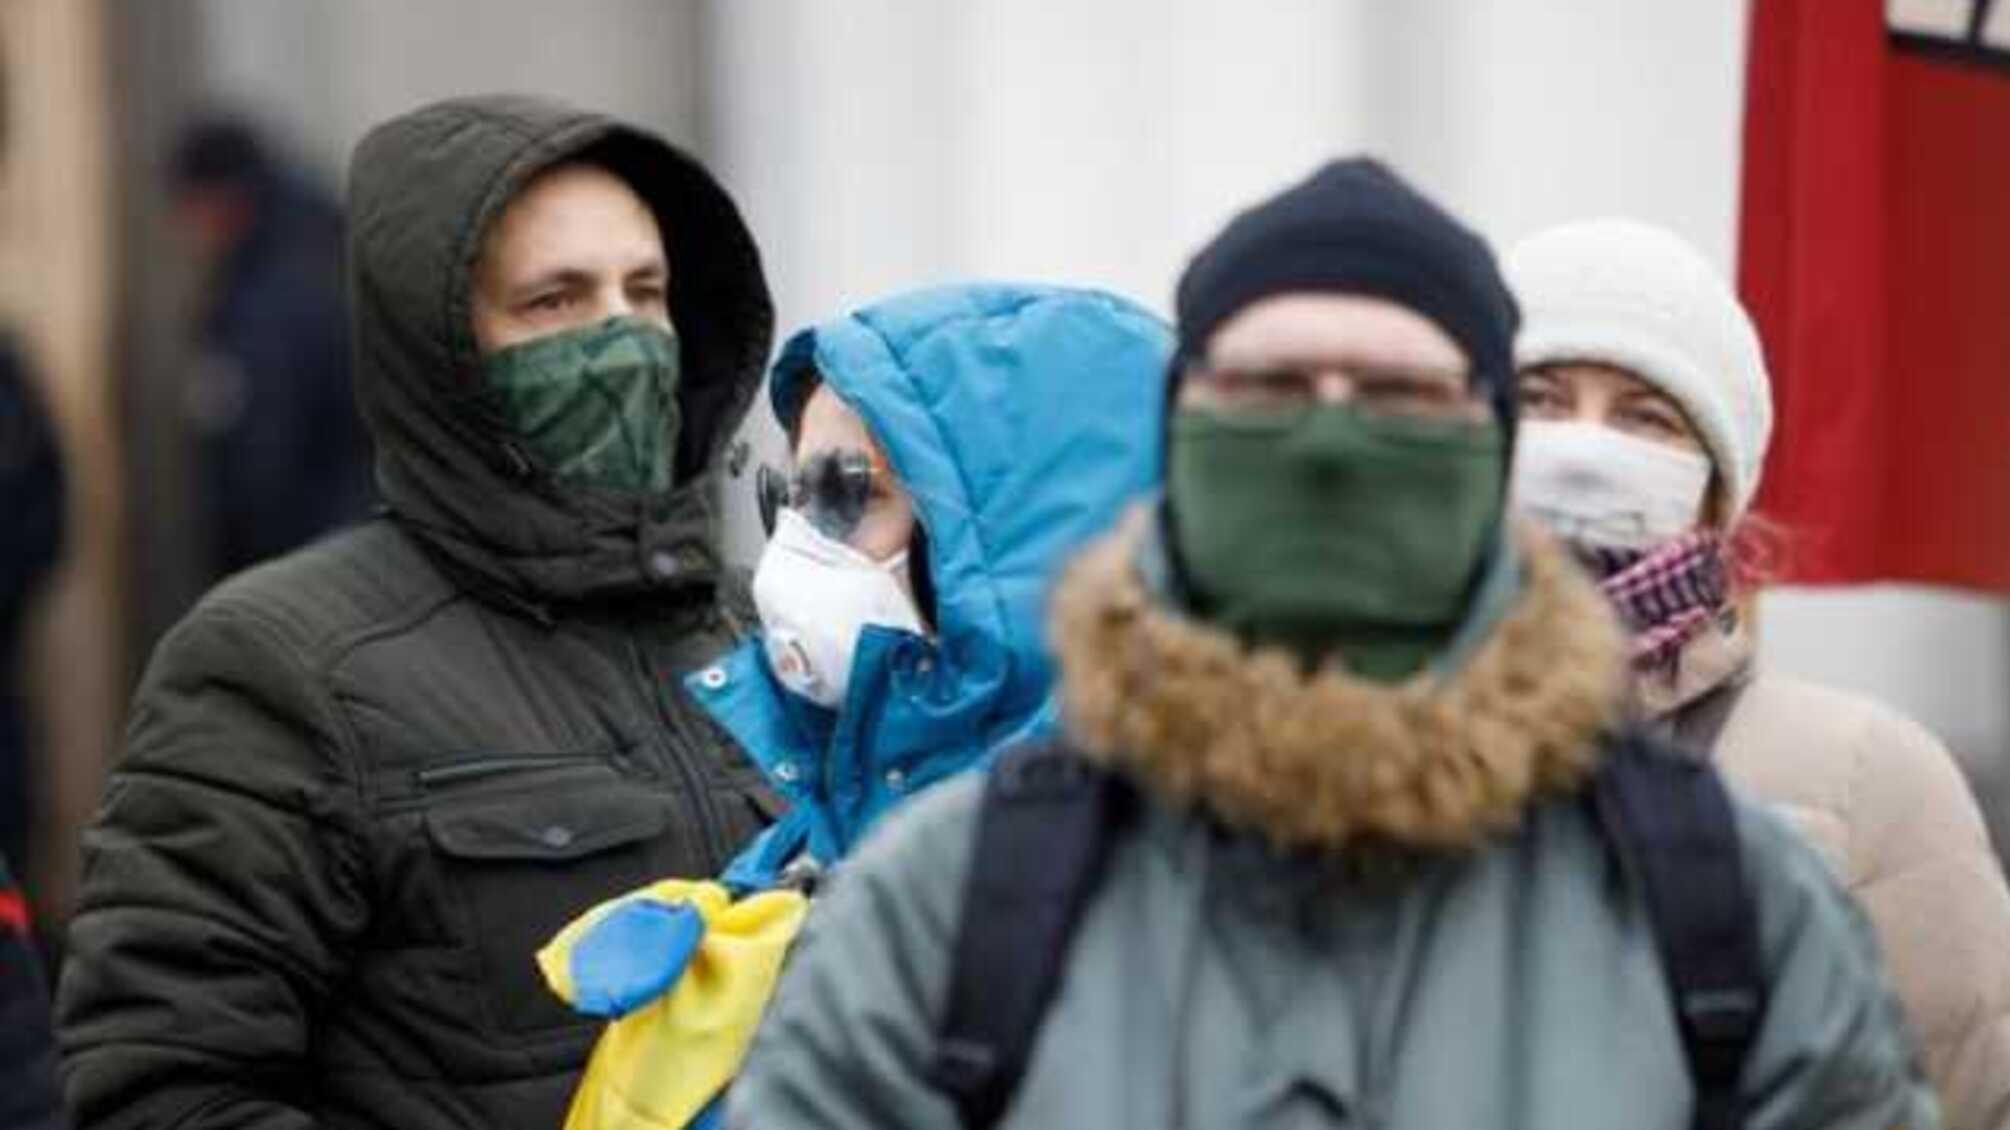 Хуже самой болезни: украинка рассказала об 'аде', который устроили ее семье из-за коронавируса